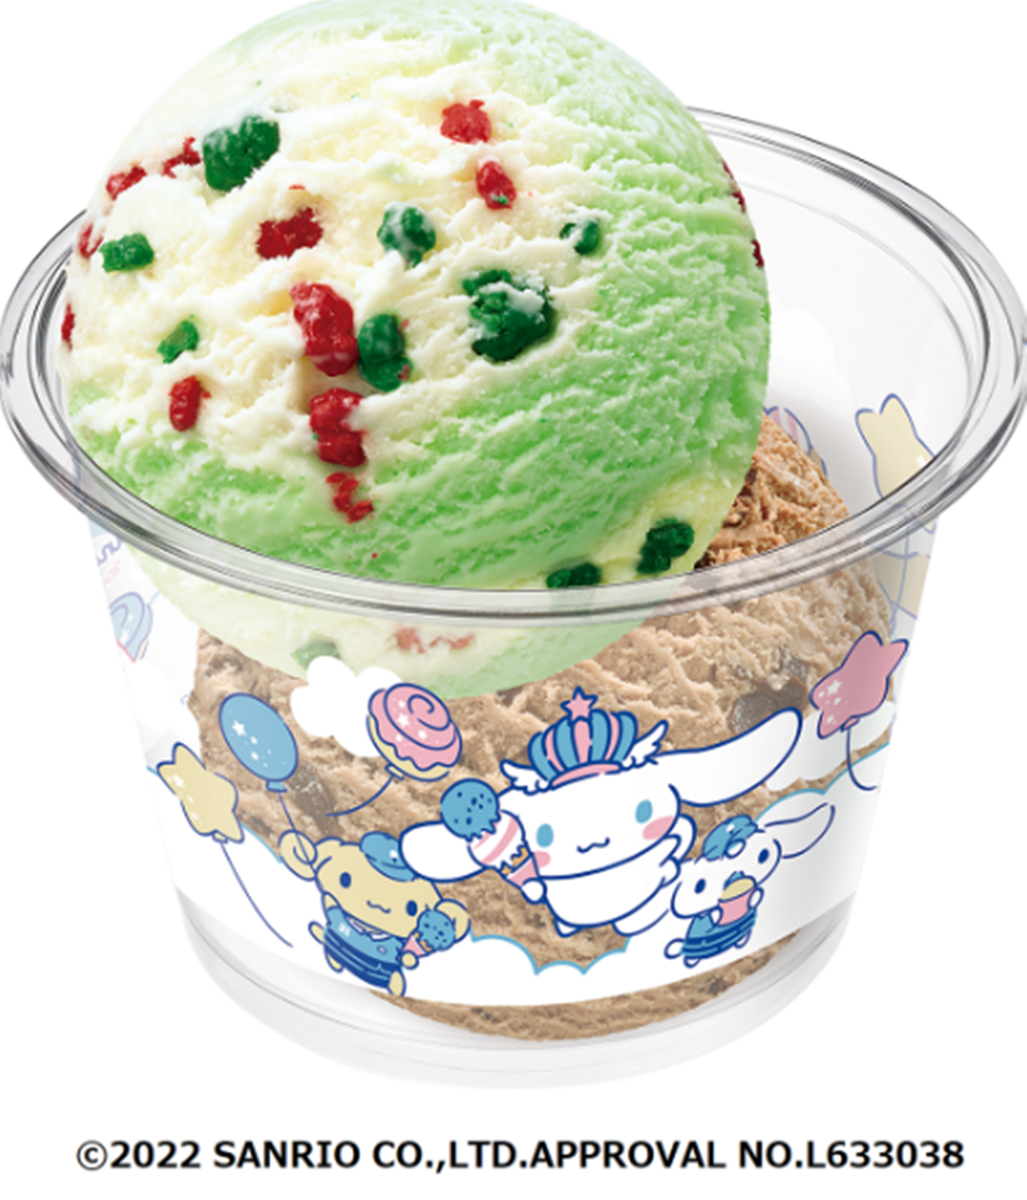 适合夏天的图片: 超可爱冰淇淋图集 - 堆糖，美图壁纸兴趣社区